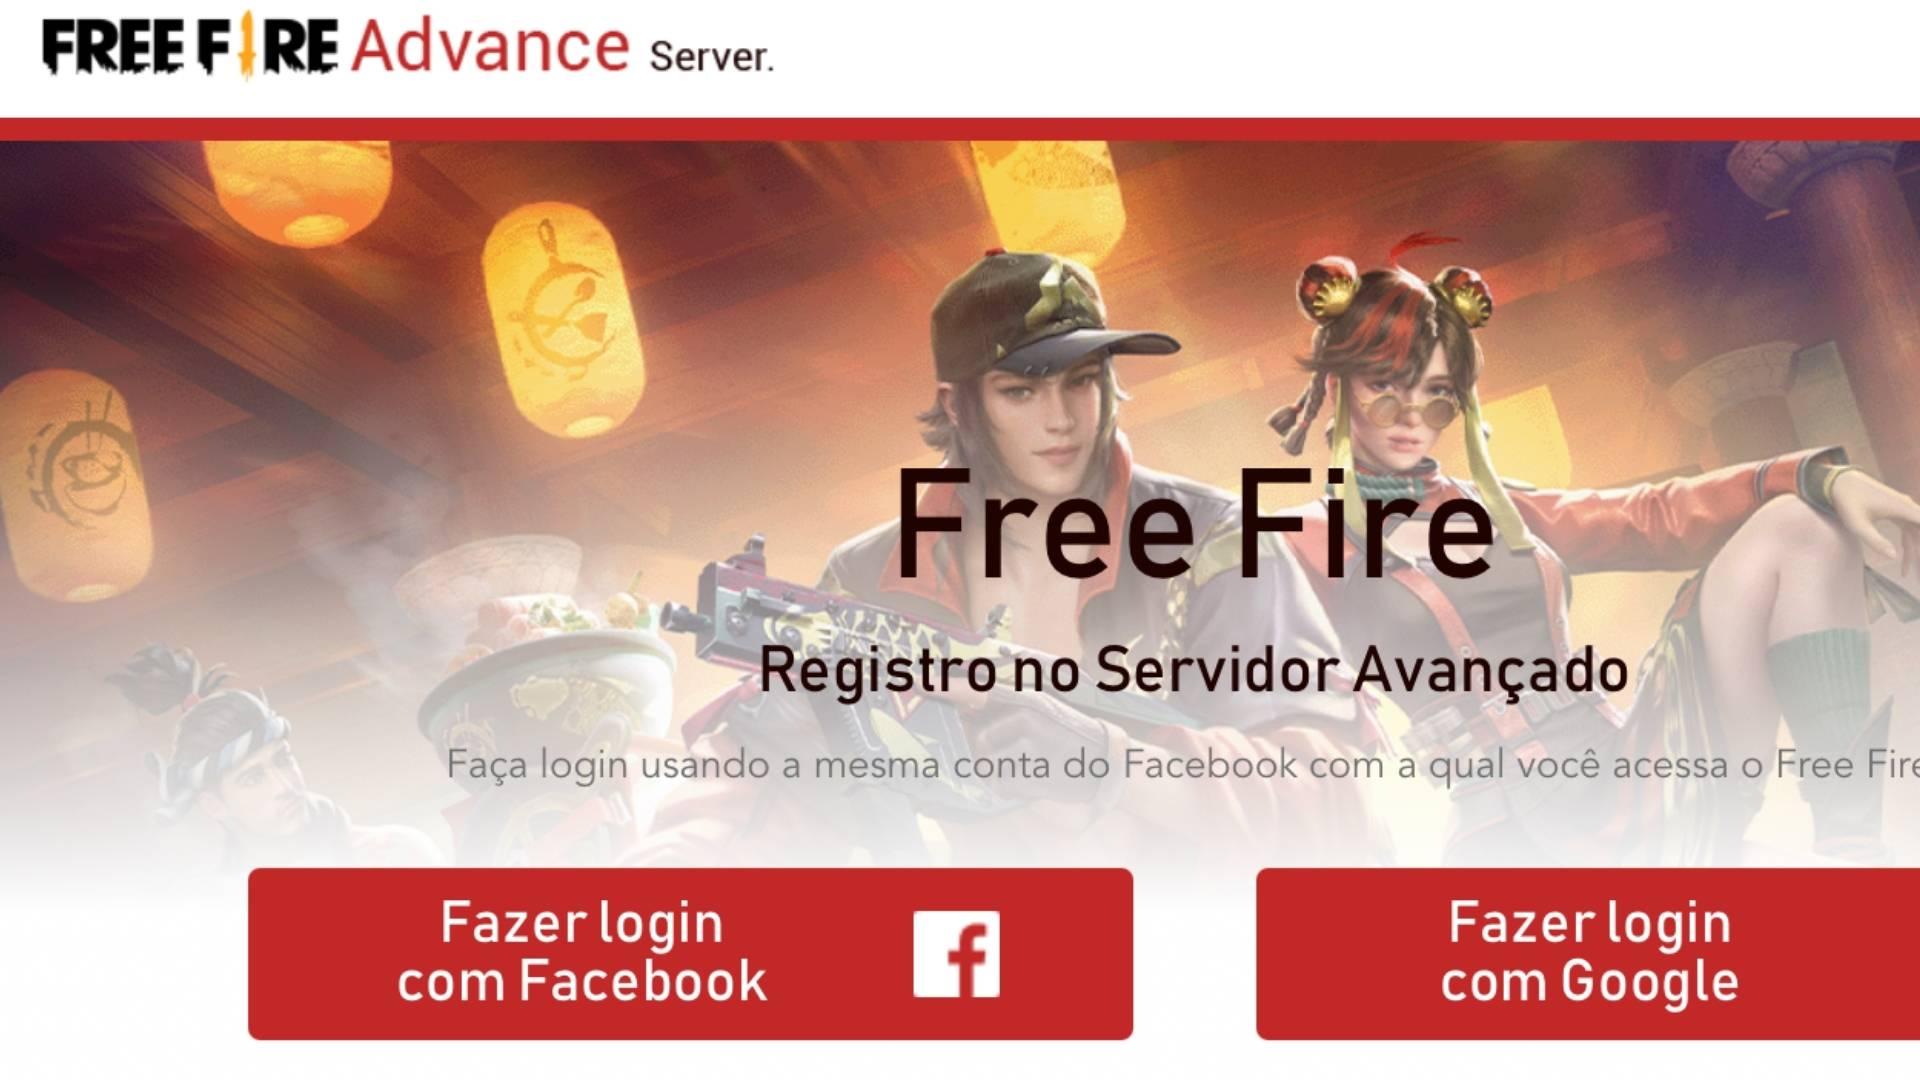 Free Fire Advanced Server Juli 2022: unduh, tanggal, pendaftaran, dan detail lebih lanjut terungkap